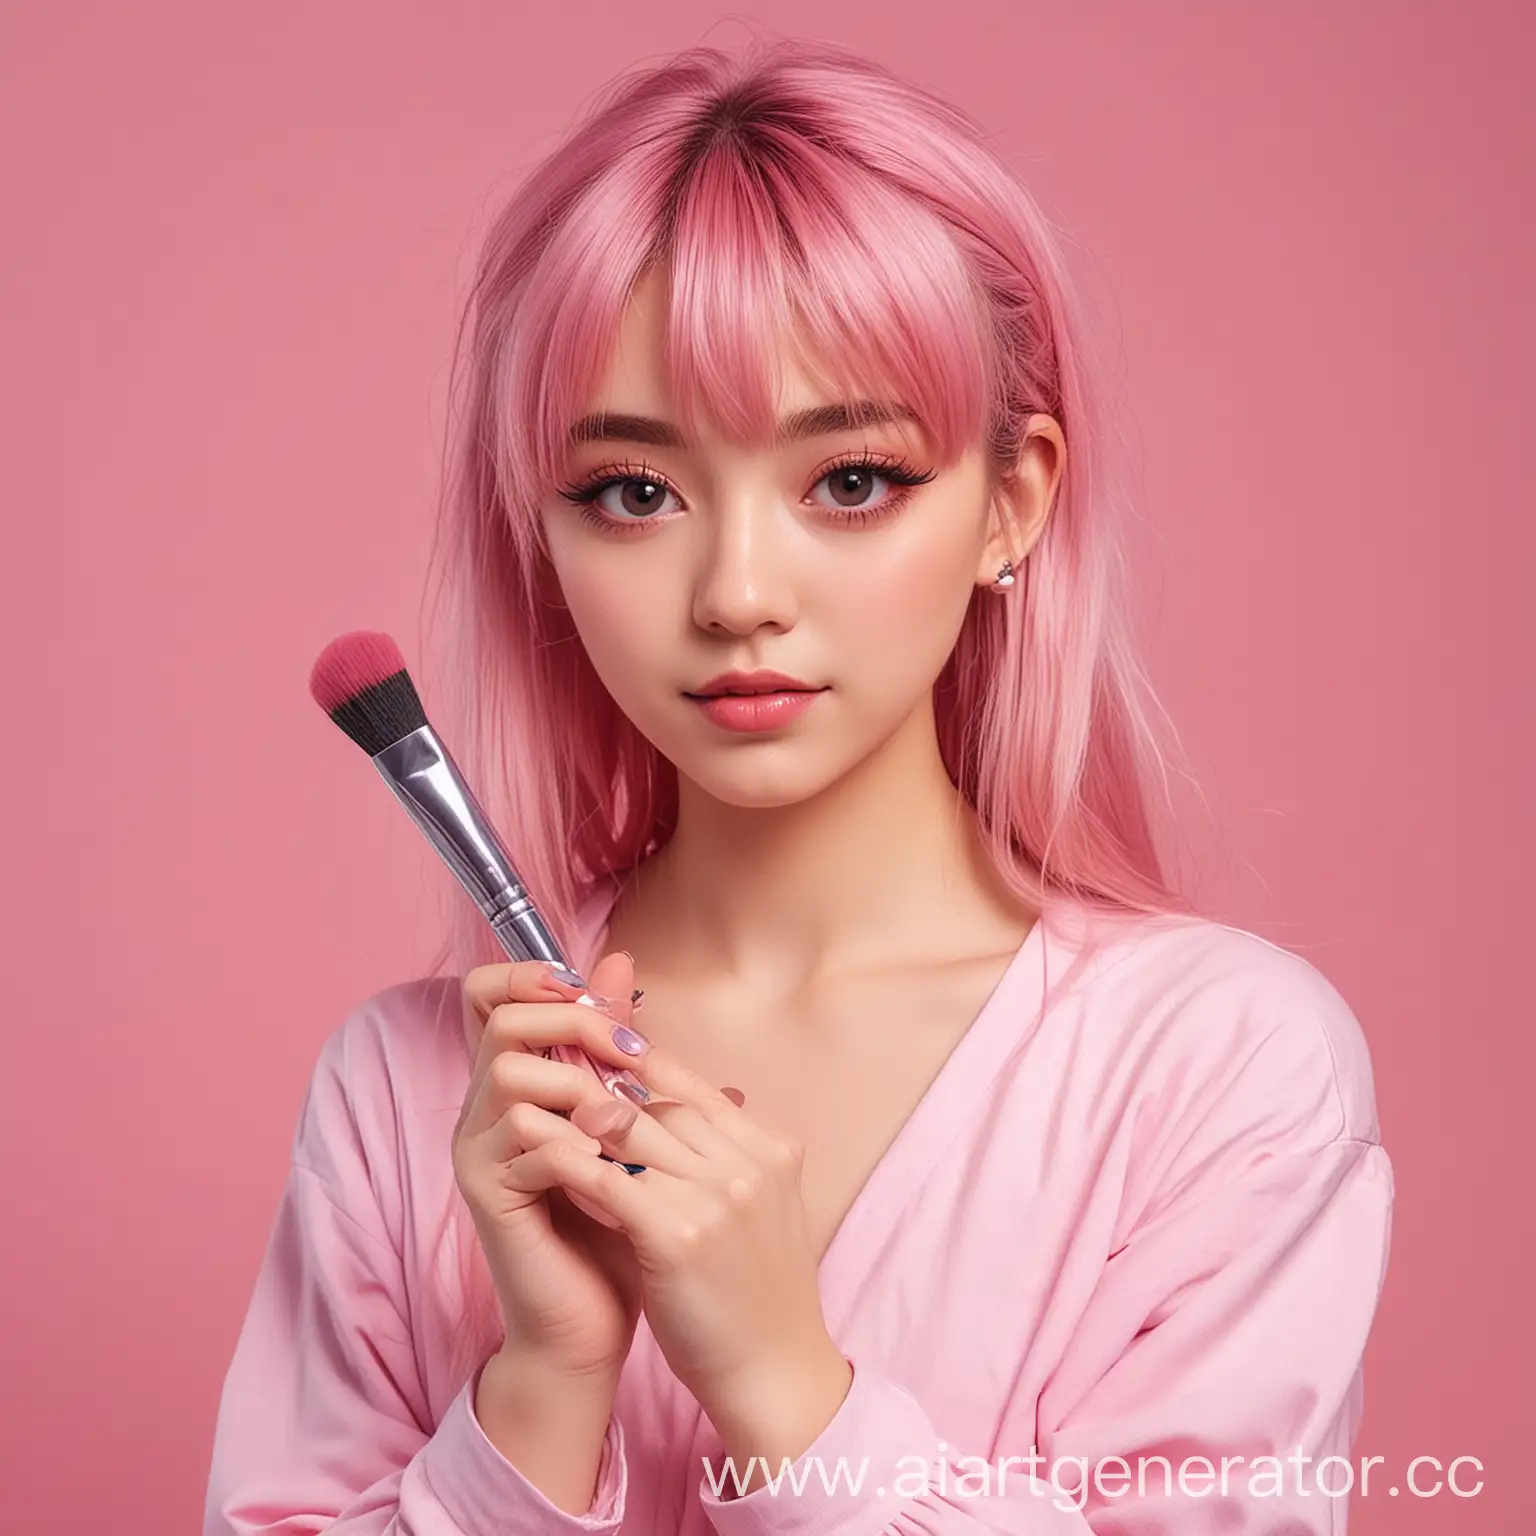 Милая аниме девочка держит в руках кисть для макияжа на розовом фоне